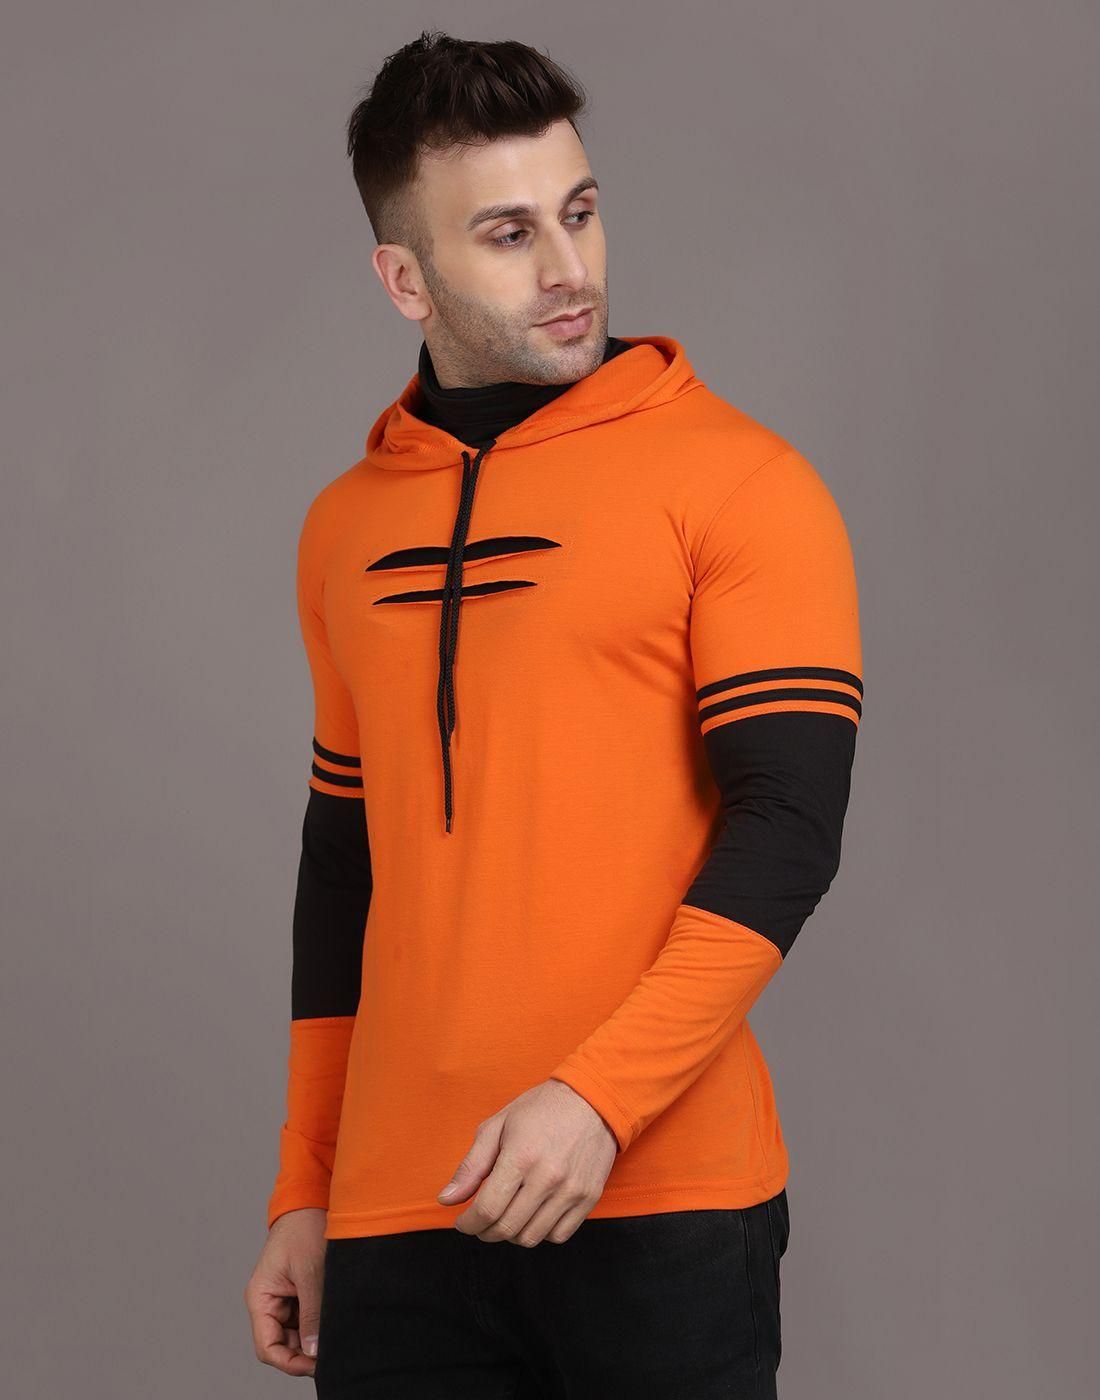 Orange Sweatshirt For Men Online | Pullover Hoodie